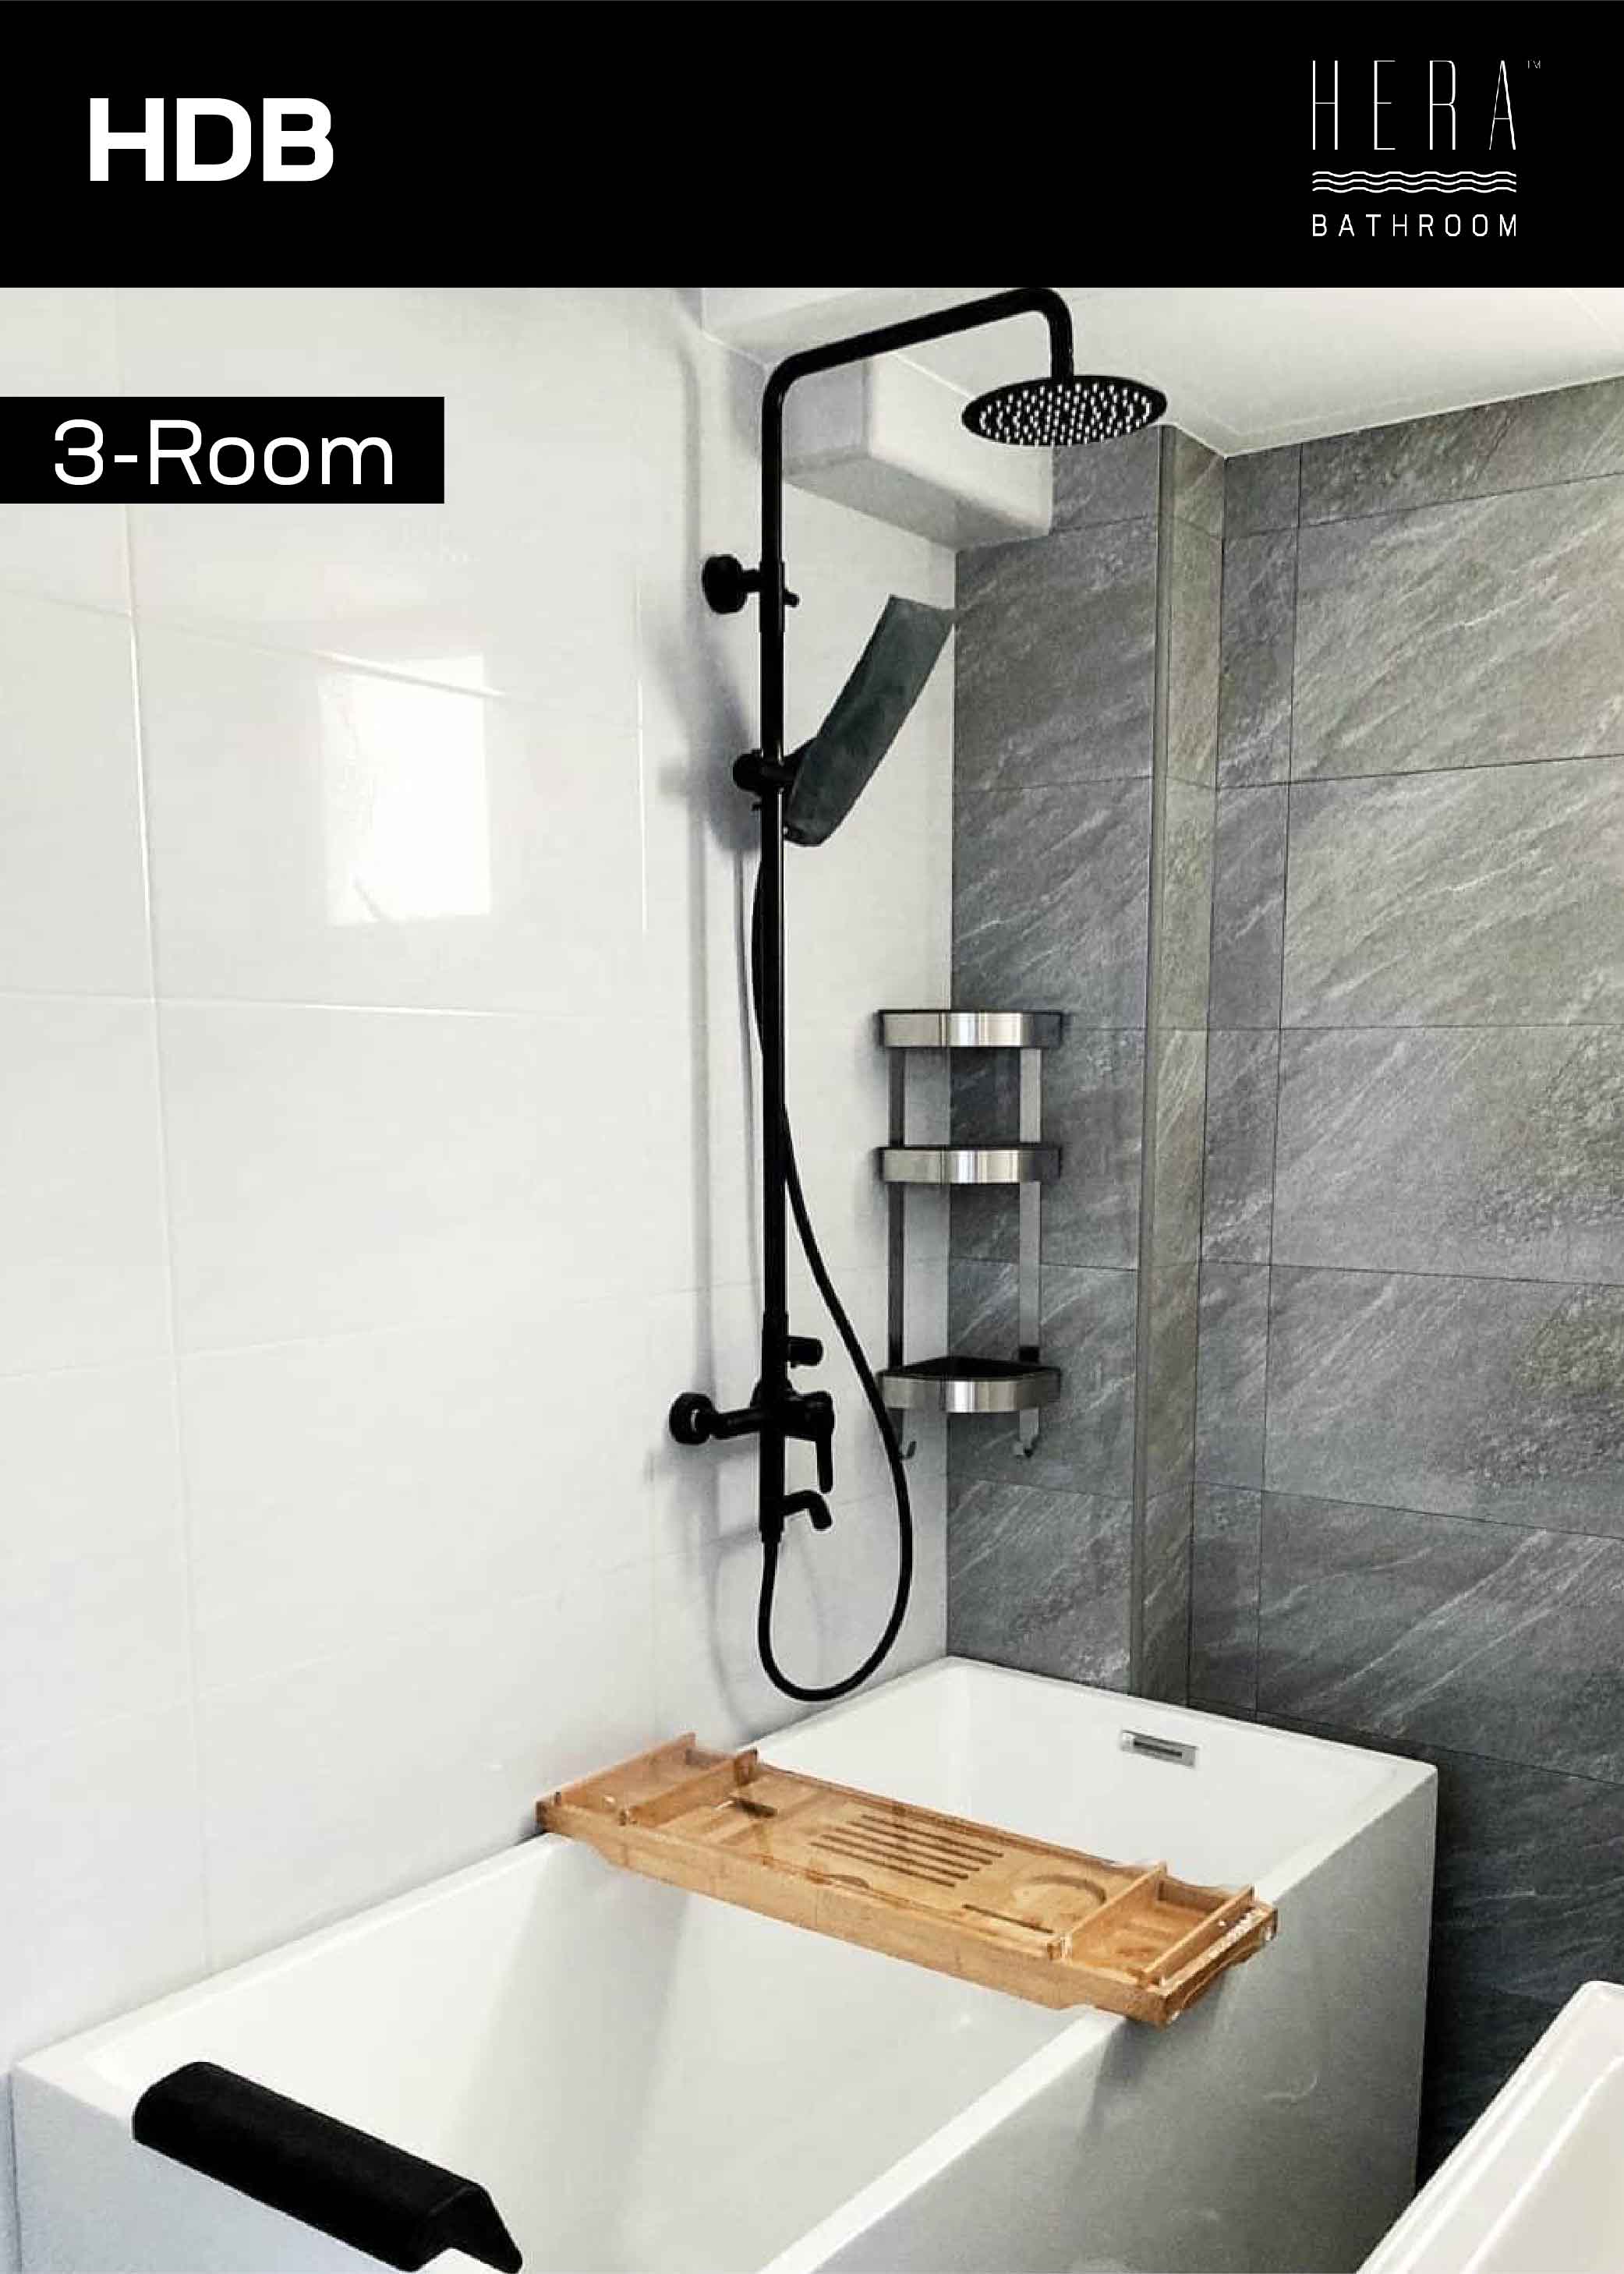 3-room fits bathtubs